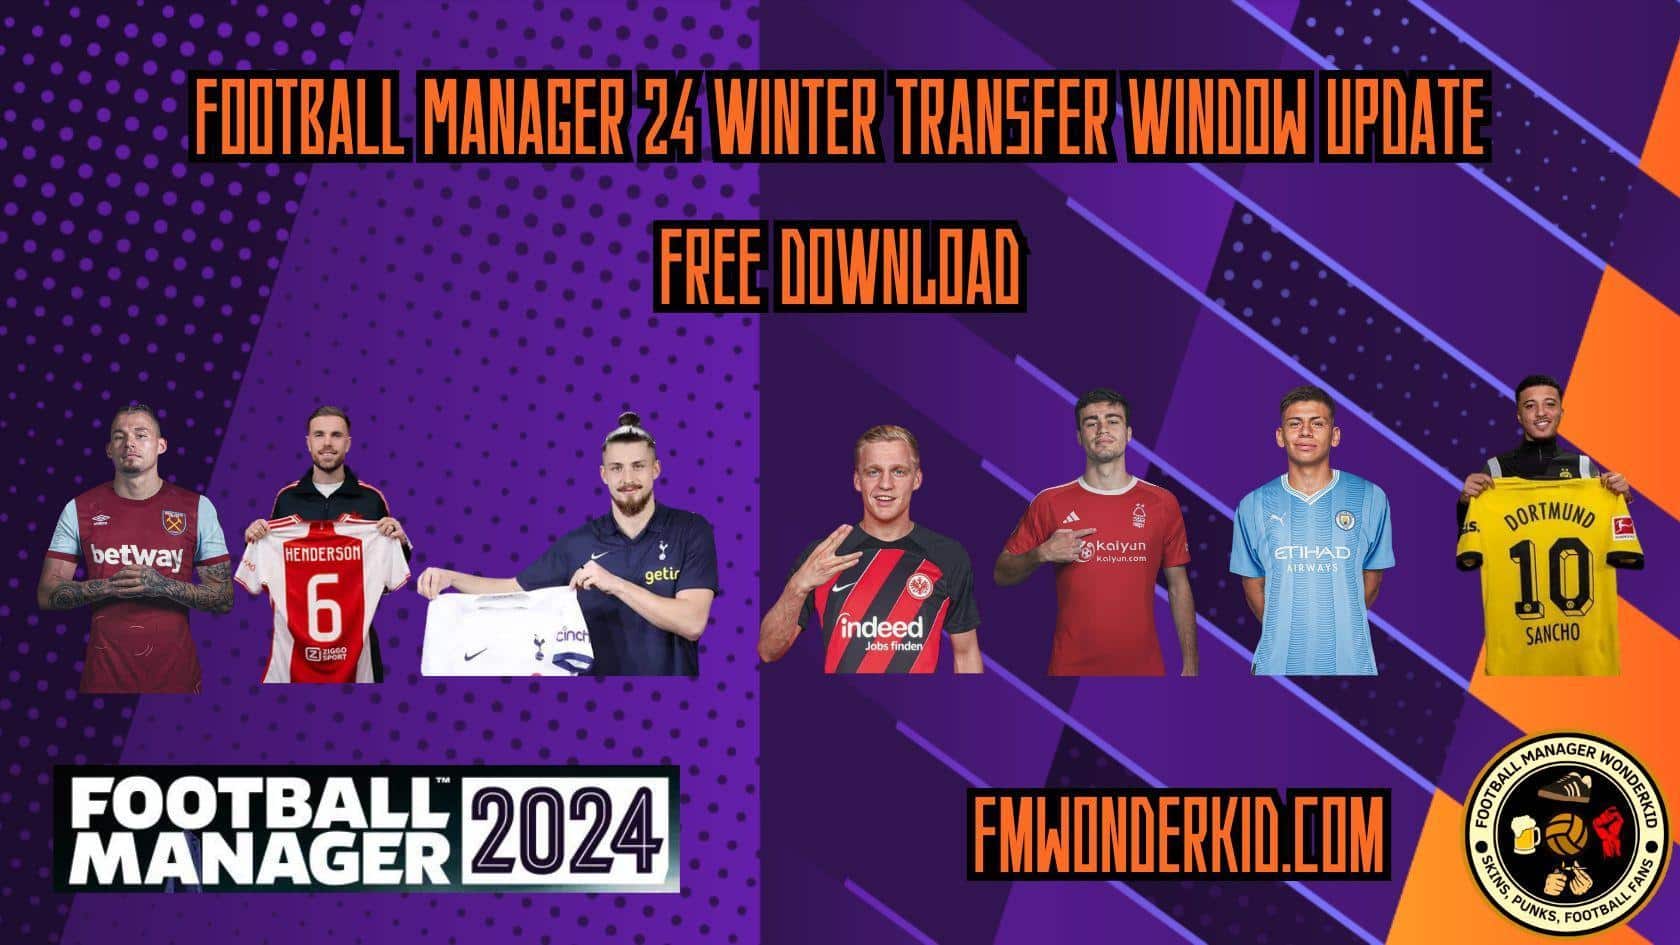 FM 24 Winter Transfer Window Update